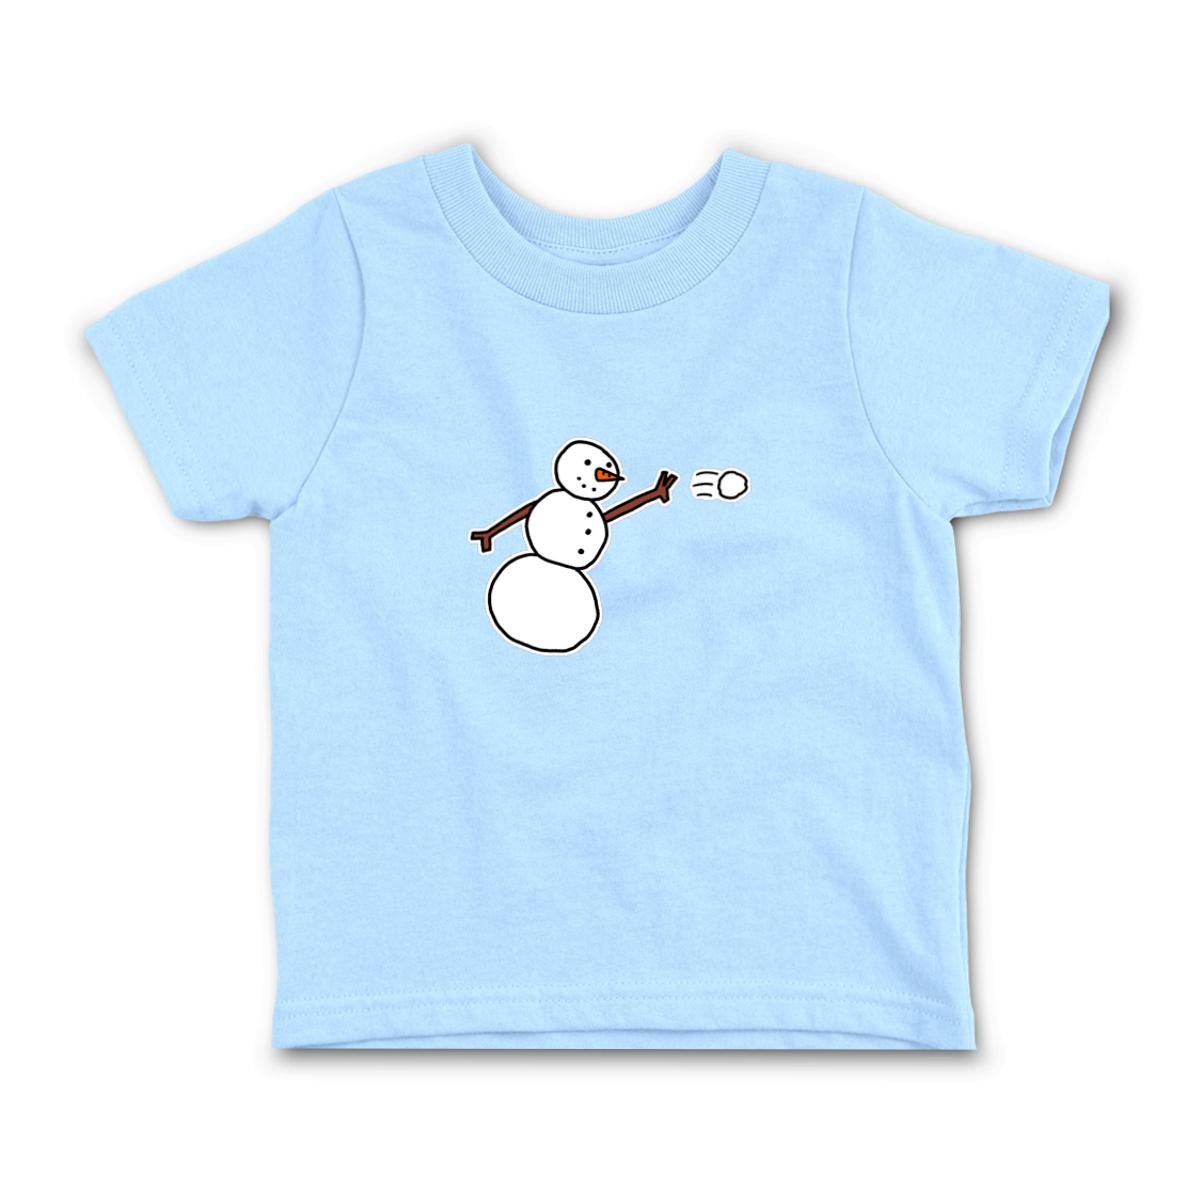 Snowman Throwing Snowball Toddler Tee 2T light-blue